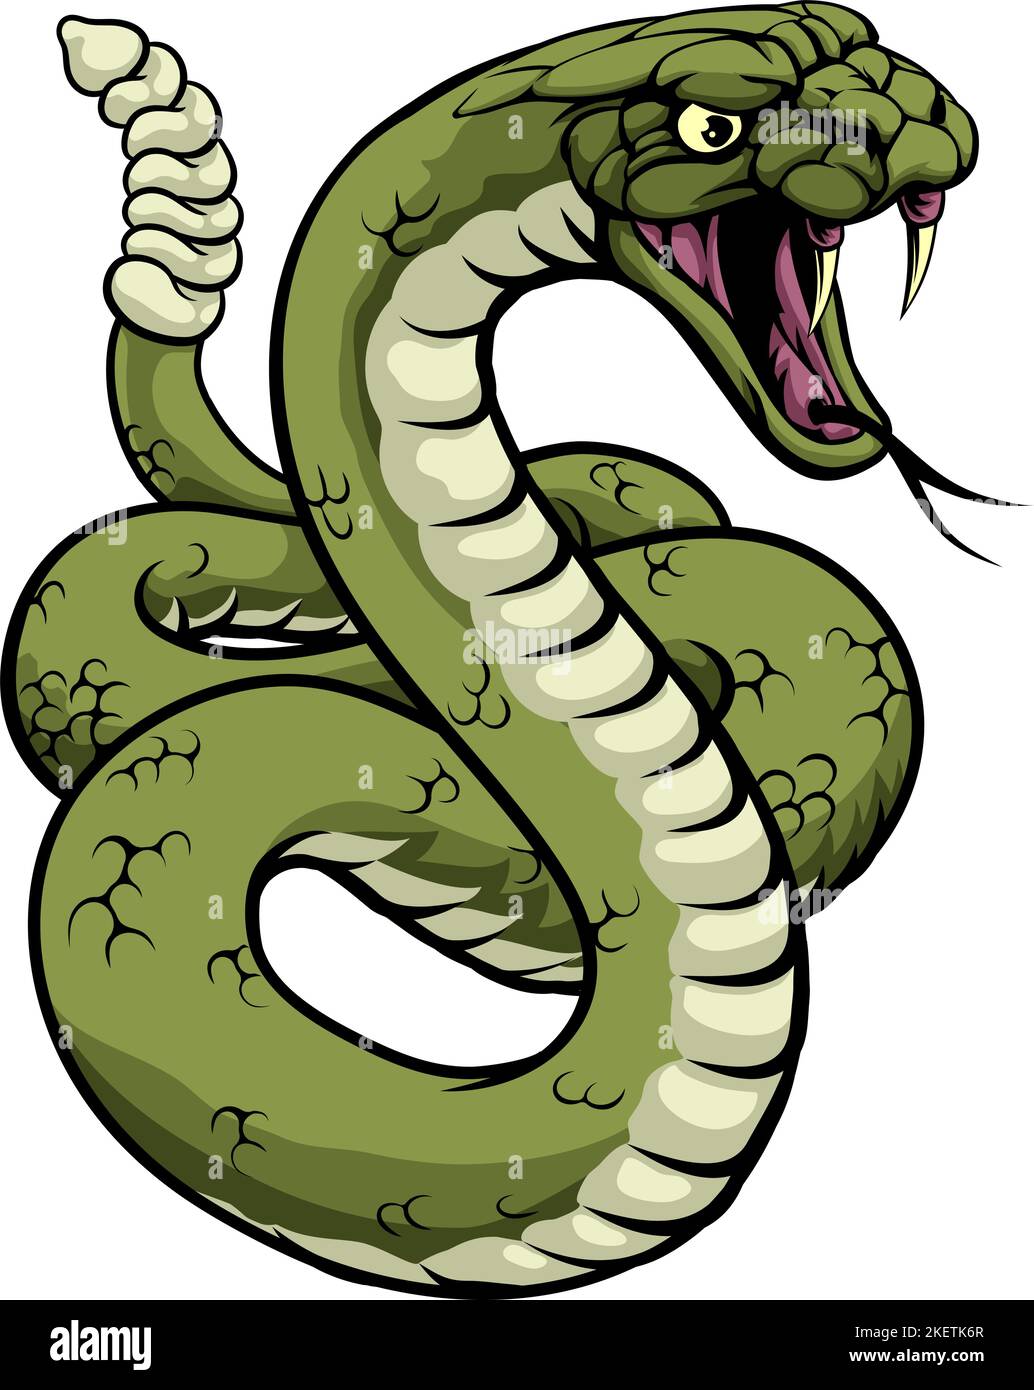 Mascotte de l'équipe de sport des animaux de serpent Rattlesnake Illustration de Vecteur